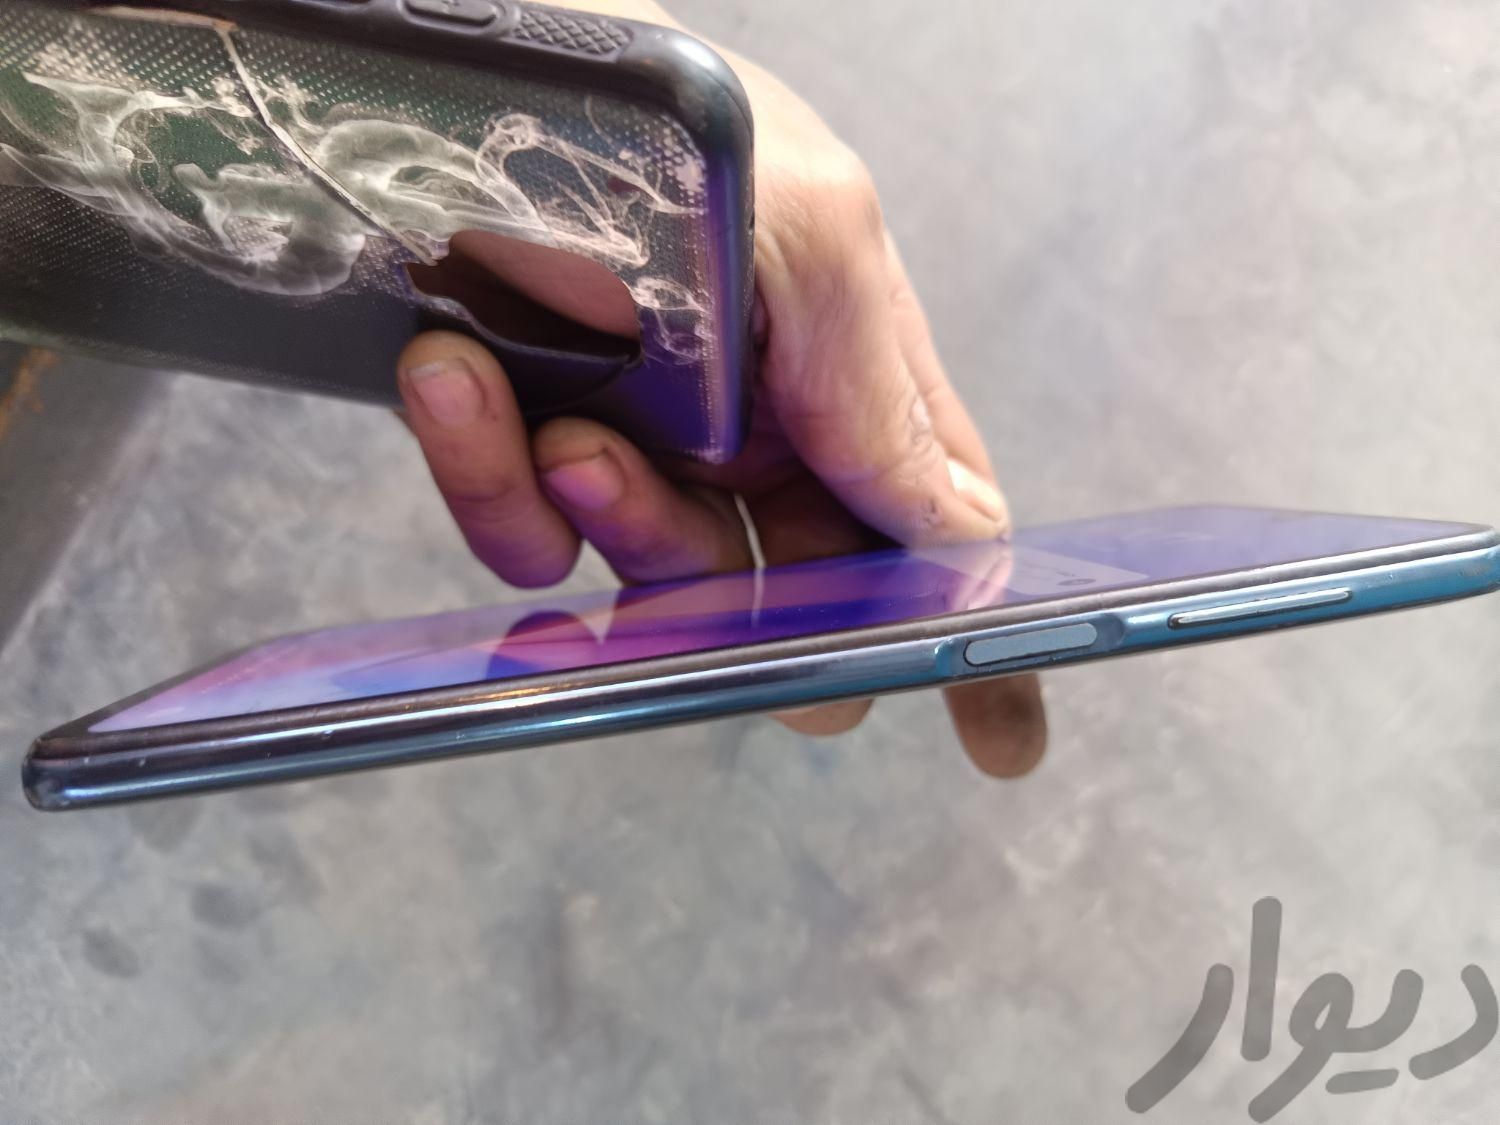 شیائومی Redmi Note 9 Pro ۶۴ گیگابایت|موبایل|بهبهان, |دیوار